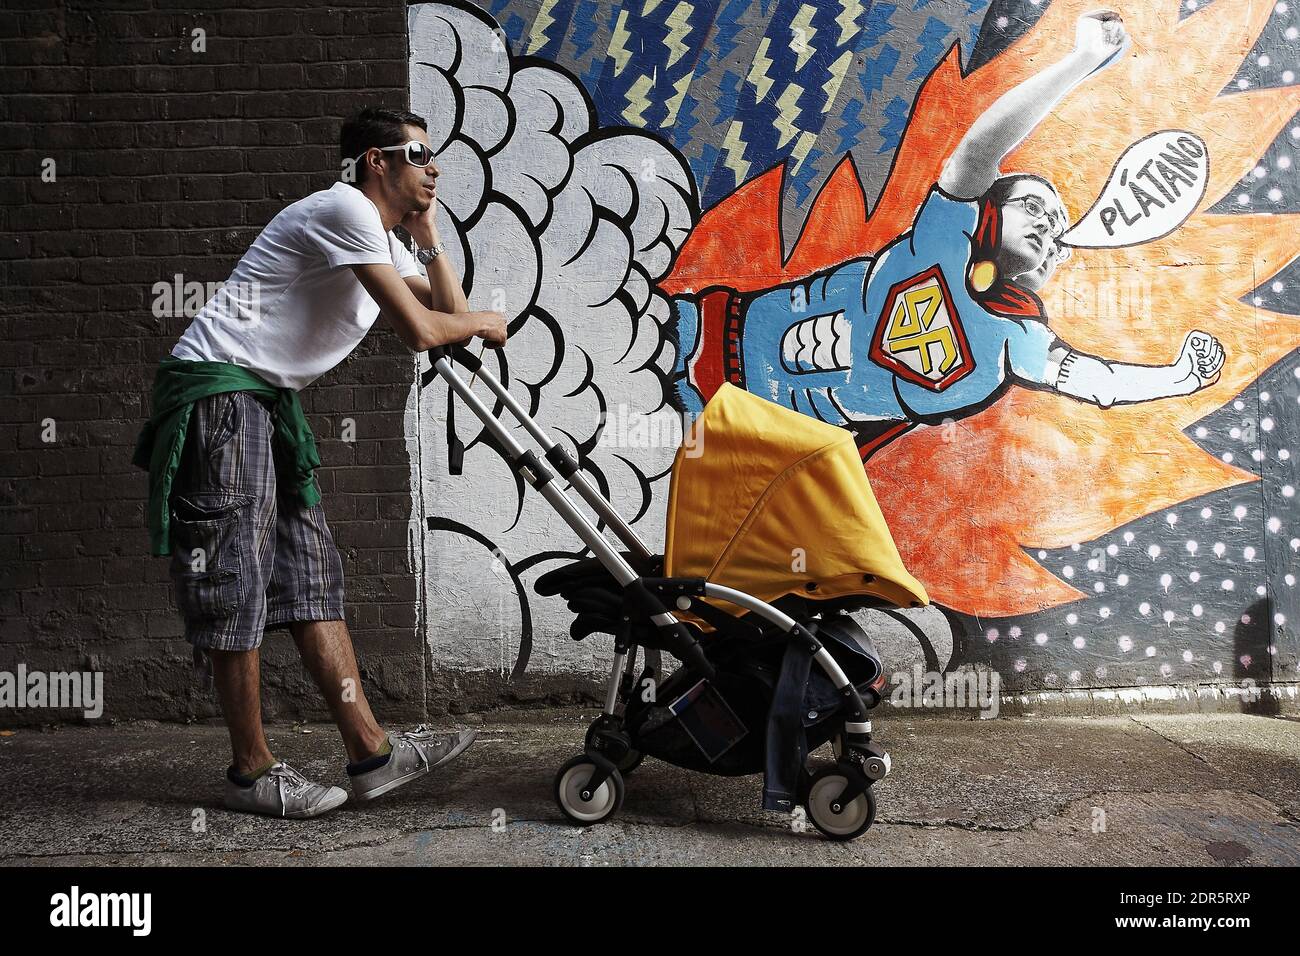 GRANDE-BRETAGNE / Londres / Père poussant son bébé dans un buggy tout en parlant sur son téléphone mobile.Homme parlant sur téléphone mobile avec bébé dans poussette . Banque D'Images